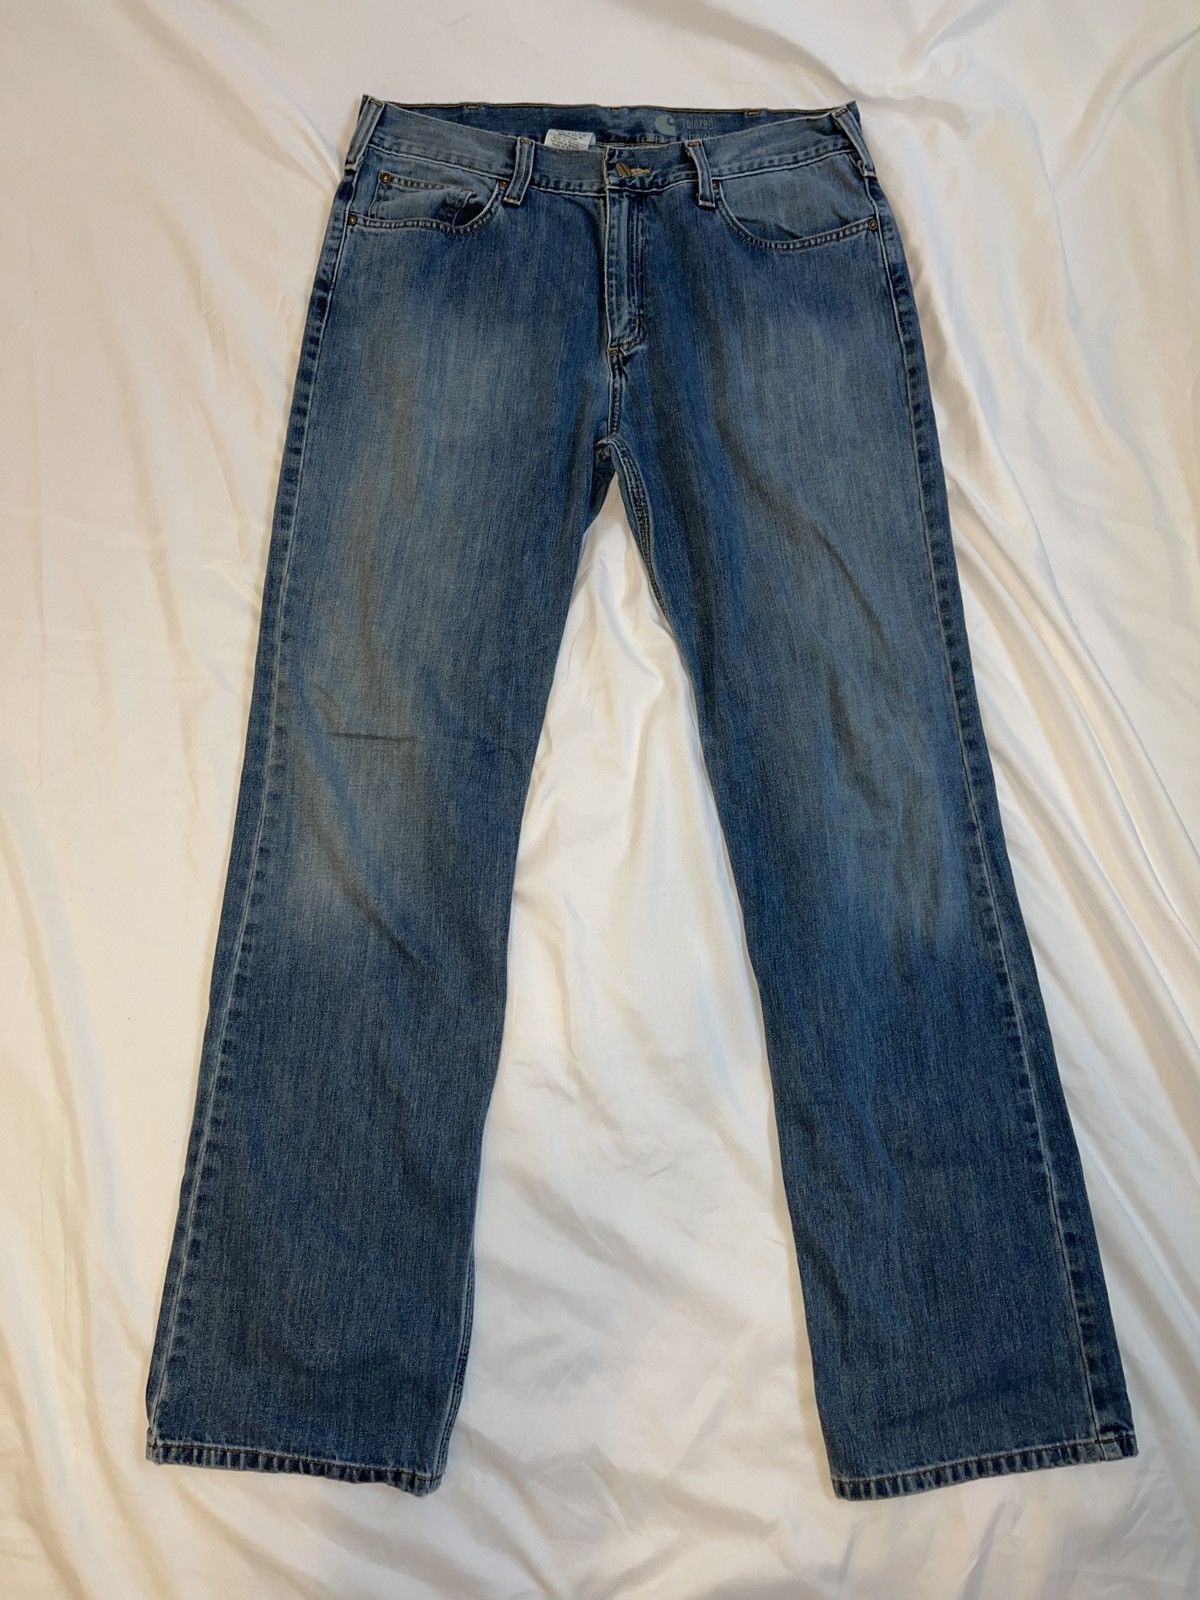 Vintage Vintage Carhartt Jeans Size US 36 / EU 52 - 1 Preview